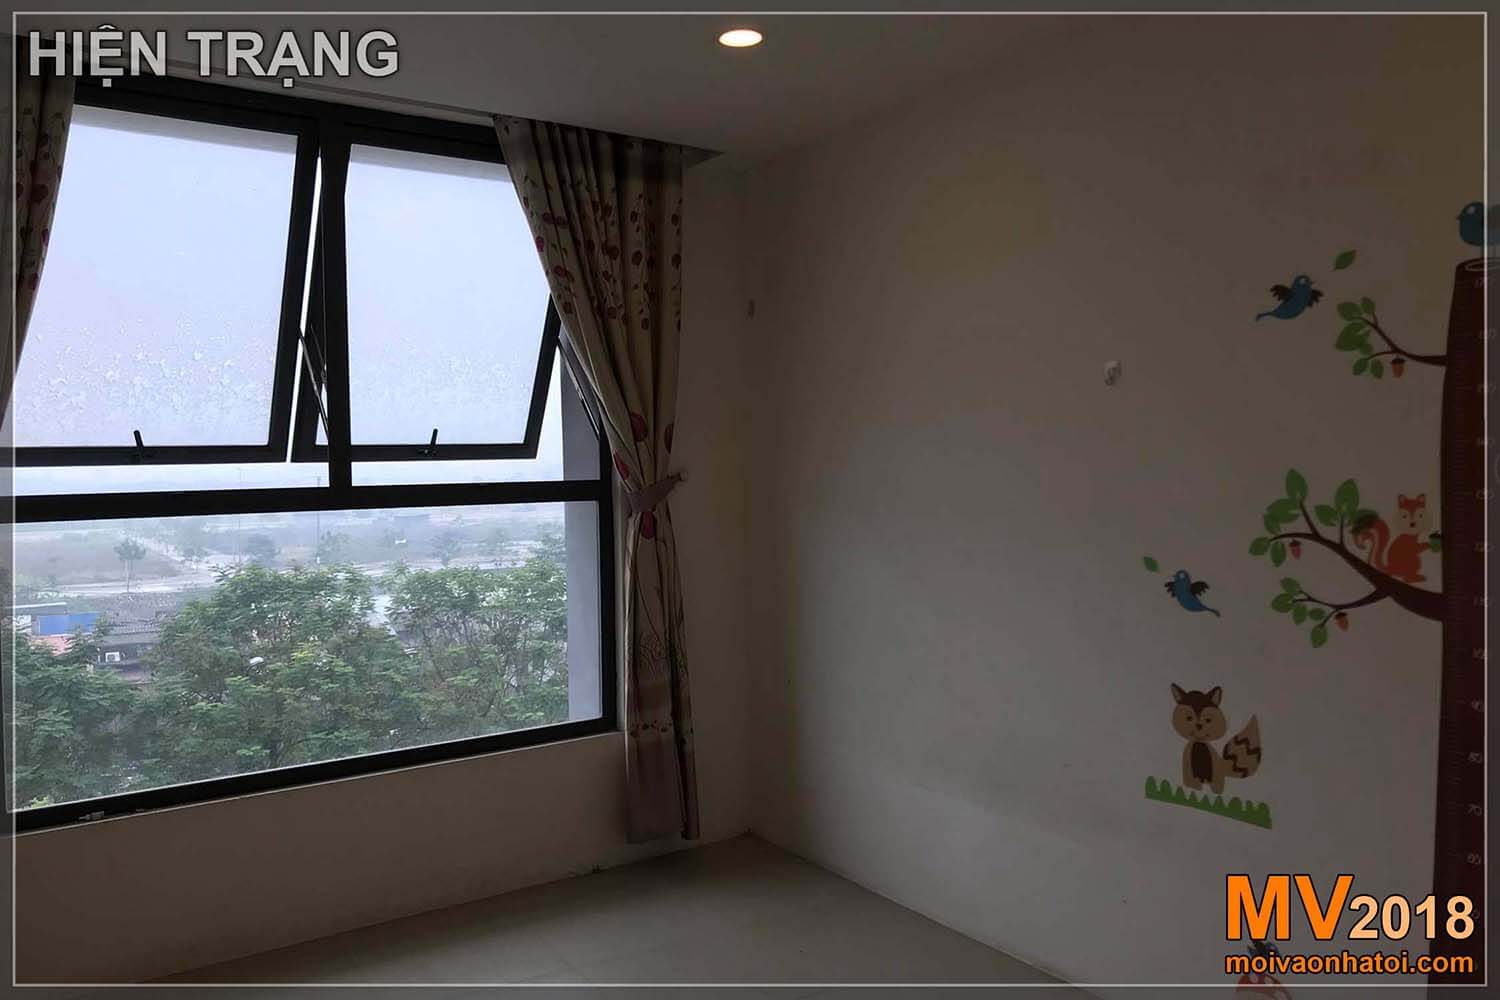 La situazione del condominio nell'area urbana di Dang Xa Gia Lam